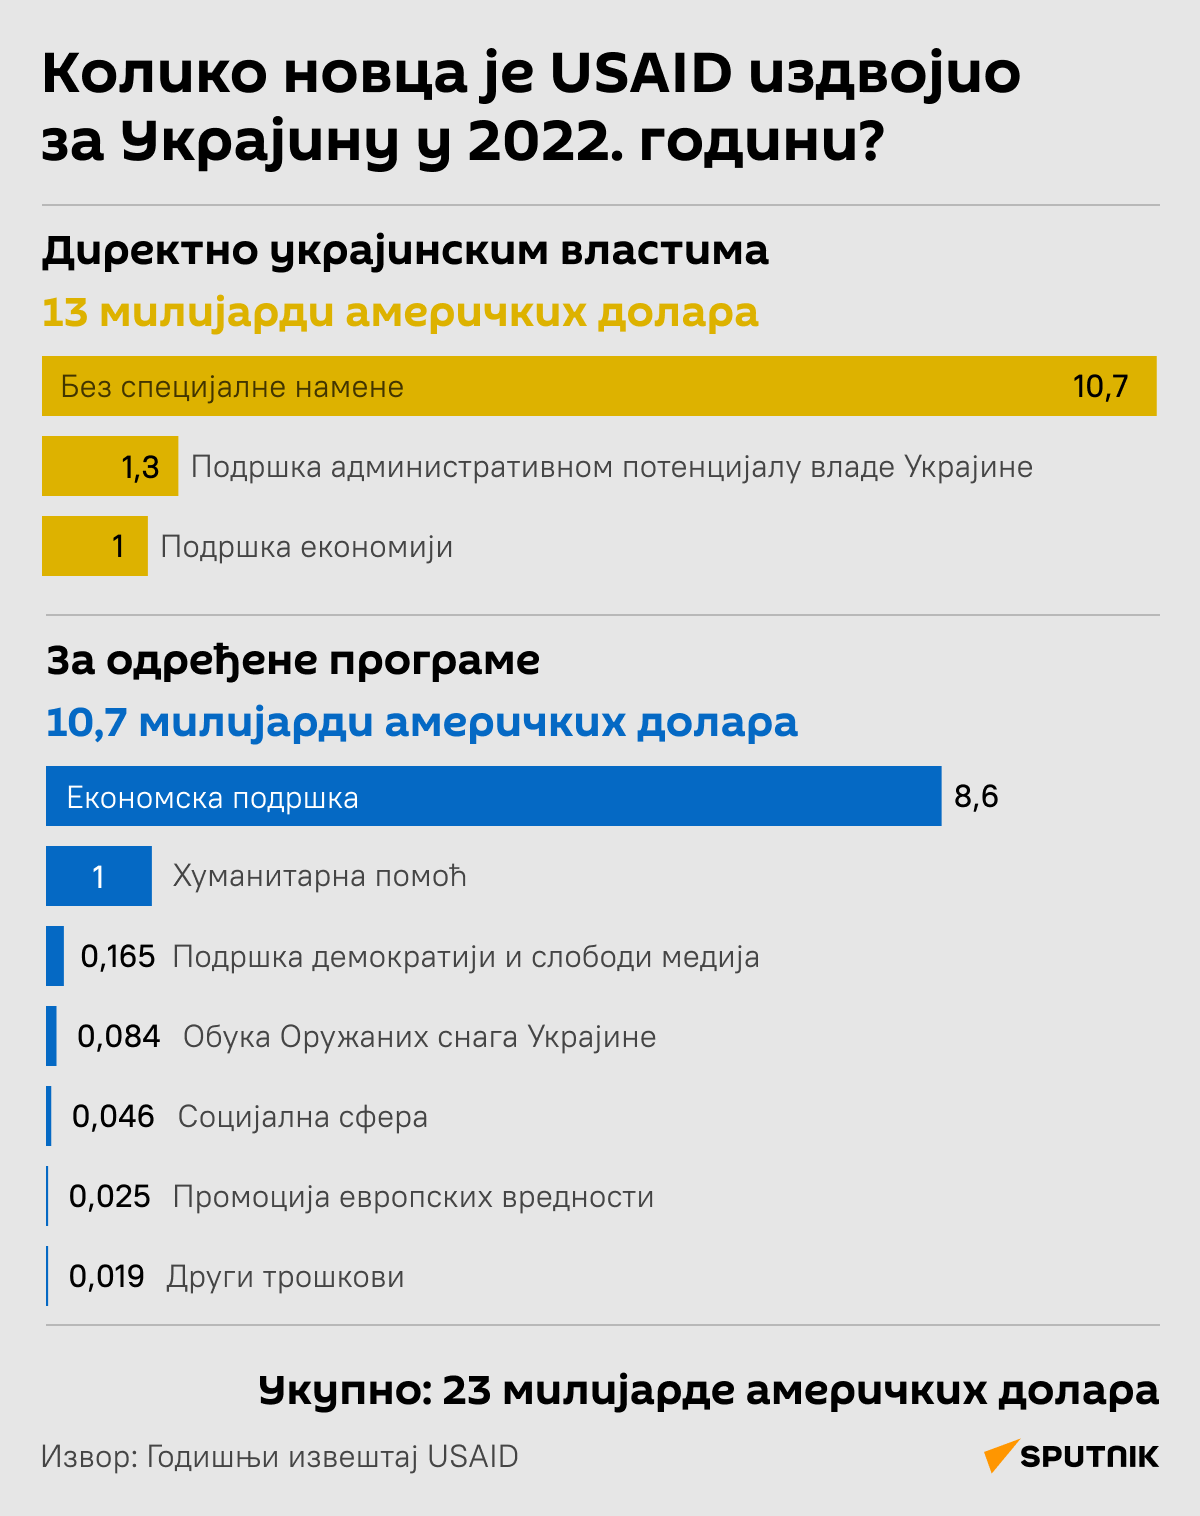 Инфографика  Колико новца је USAID издвојио за Украјину  ЋИРИЛИЦА деск - Sputnik Србија